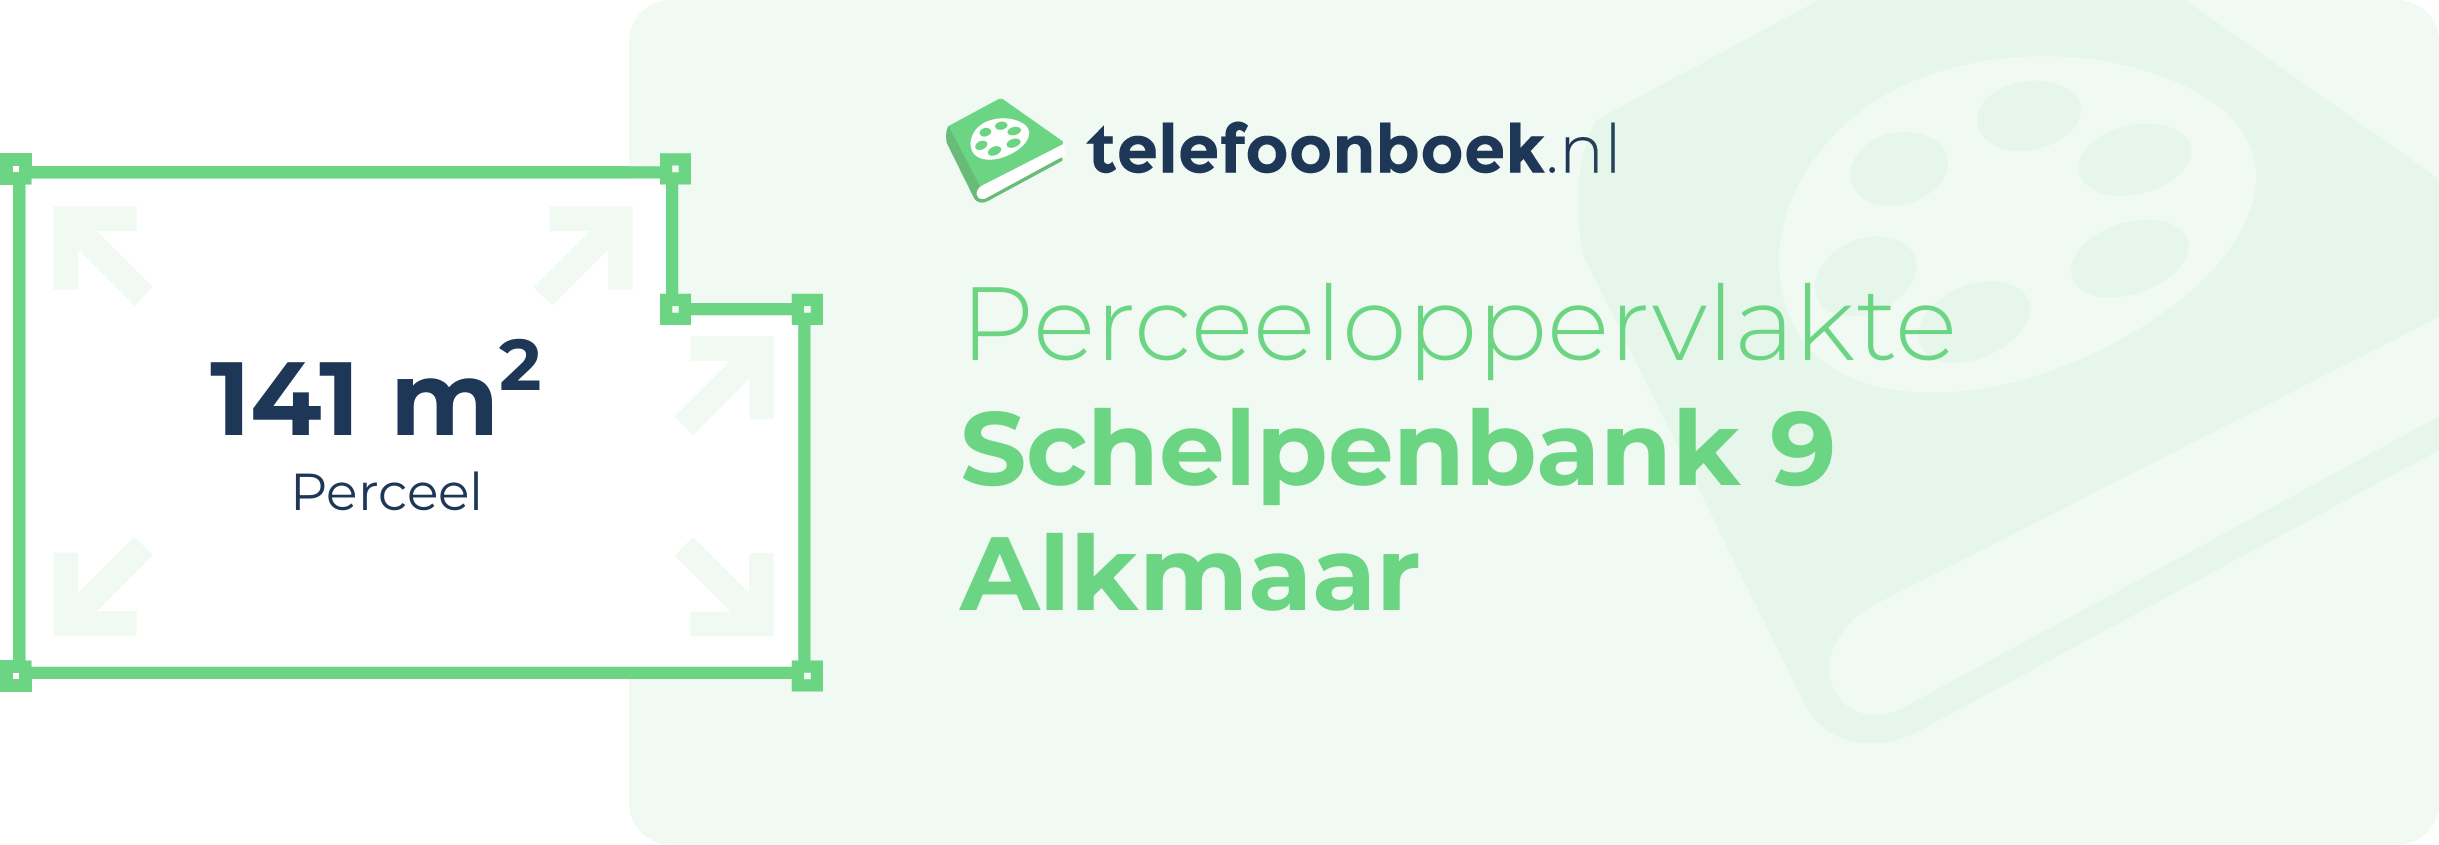 Perceeloppervlakte Schelpenbank 9 Alkmaar